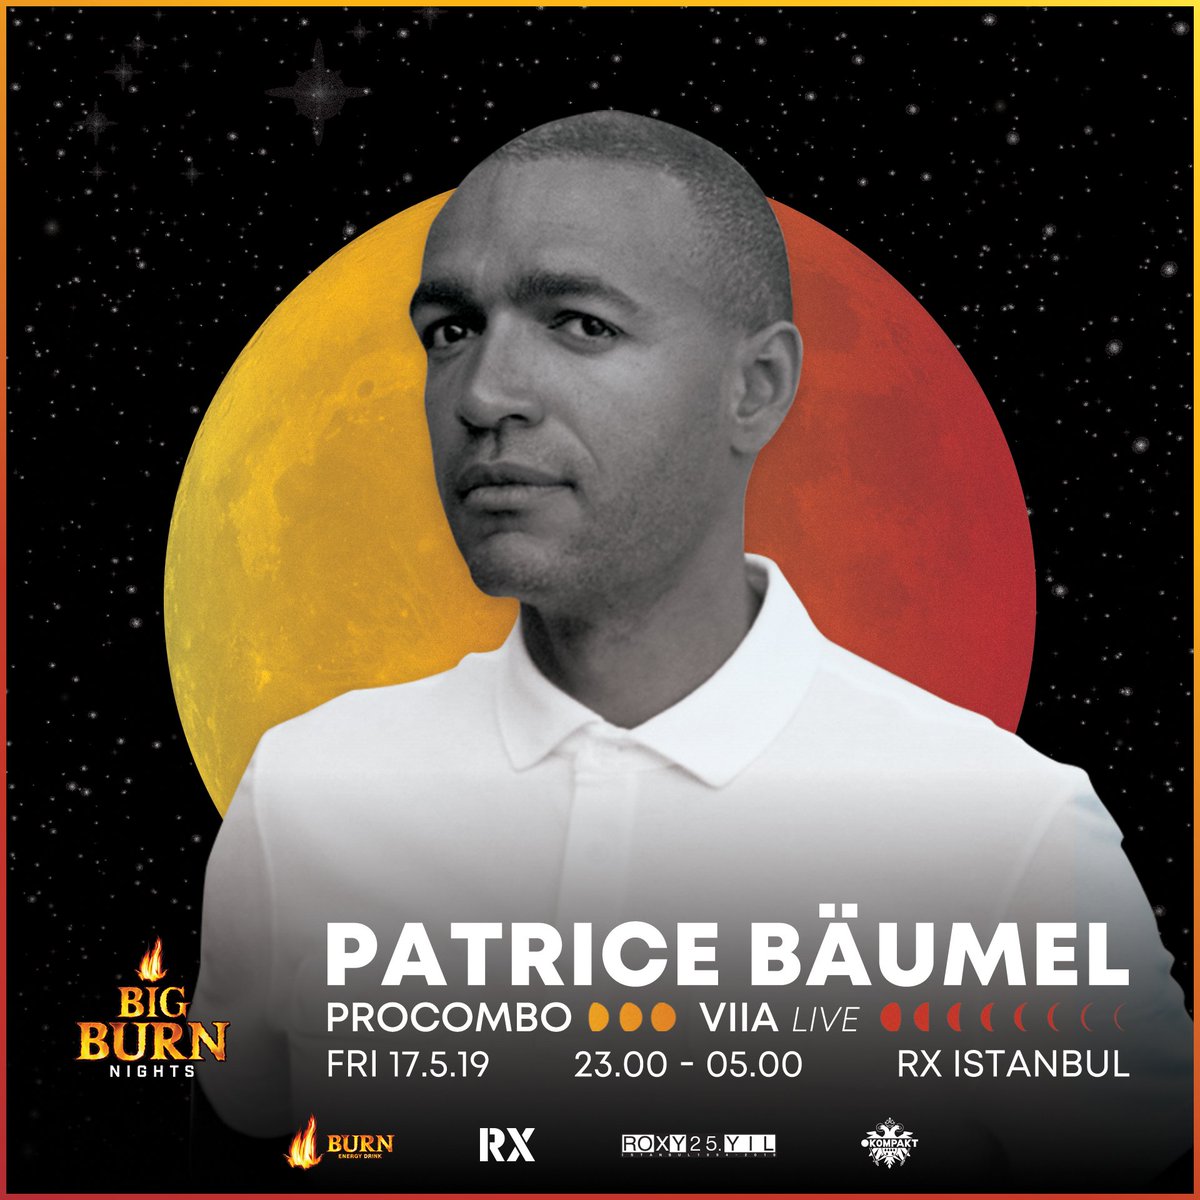 Big Burn Nights kapsamında kabine geçecek olan @patricebaumel ile buluşmaya son 12 gün! #BigBurnNights, 17 Mayıs'ta RX Istanbul'da! Biletler: bugece.co/events/patrice…